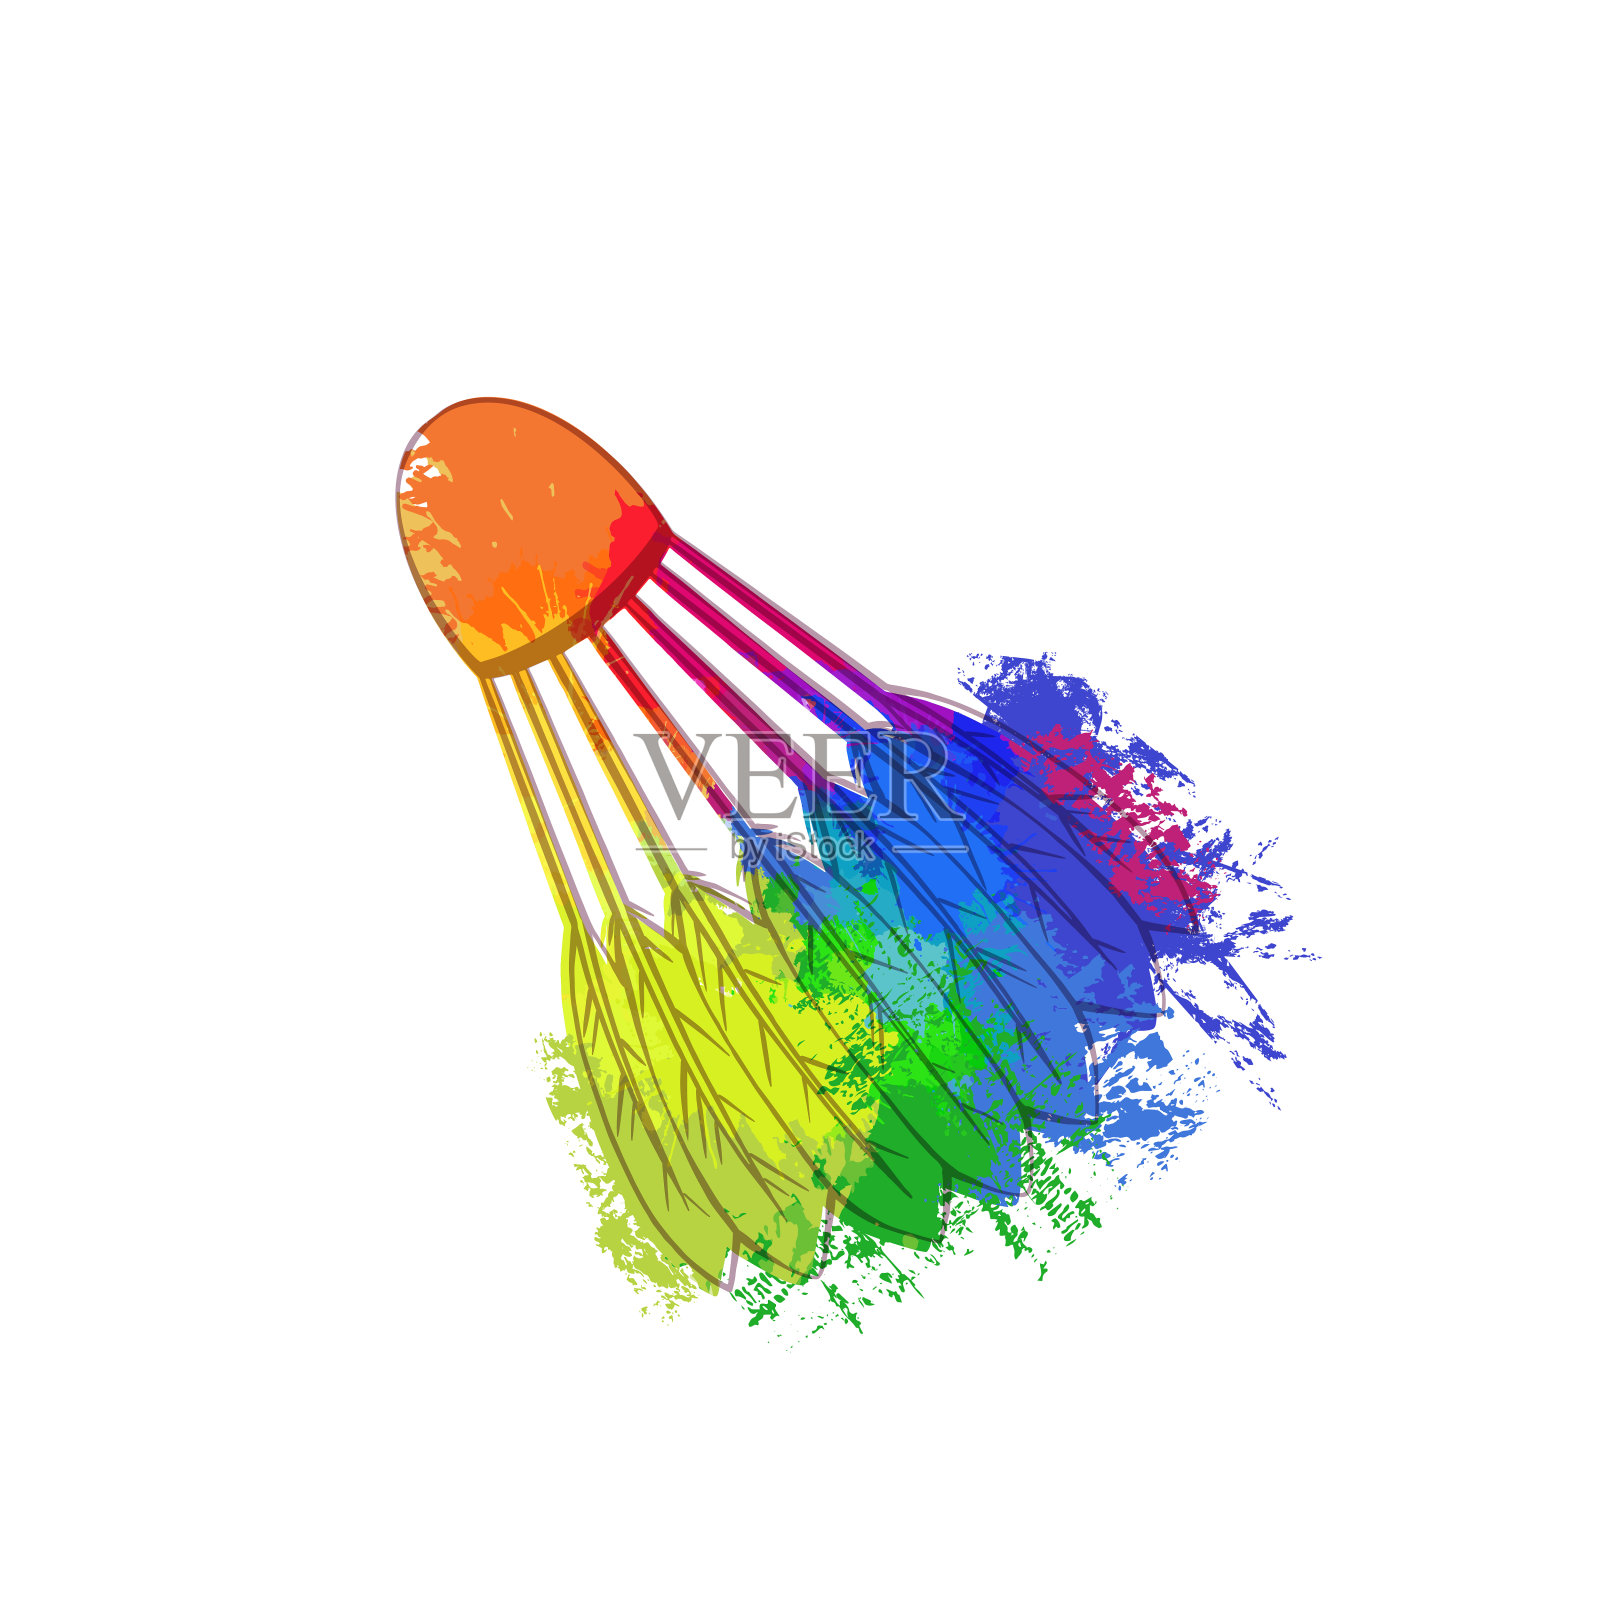 轮廓素描的羽毛球与彩虹水彩飞溅在白色的背景。运动器材。向量枯燥乏味的对象插画图片素材